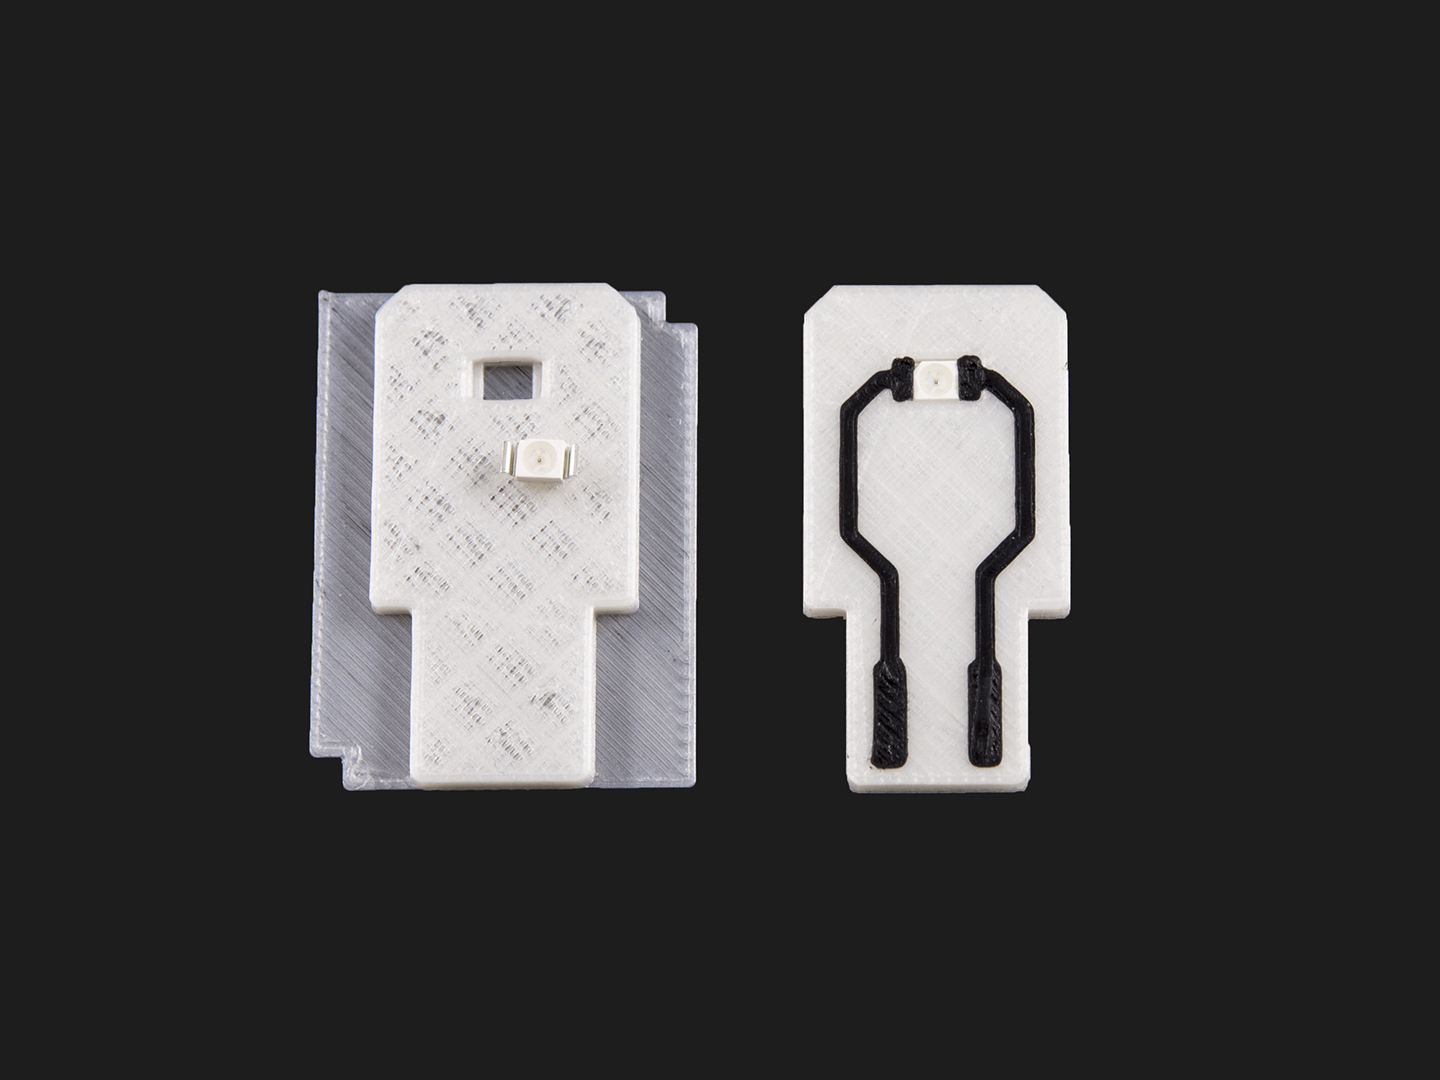 Im 2-Komponenten 3D-Druck hergestellter USB-Stick mit integrierter elektrisch leitfähiger Leiterbahn und einer LED